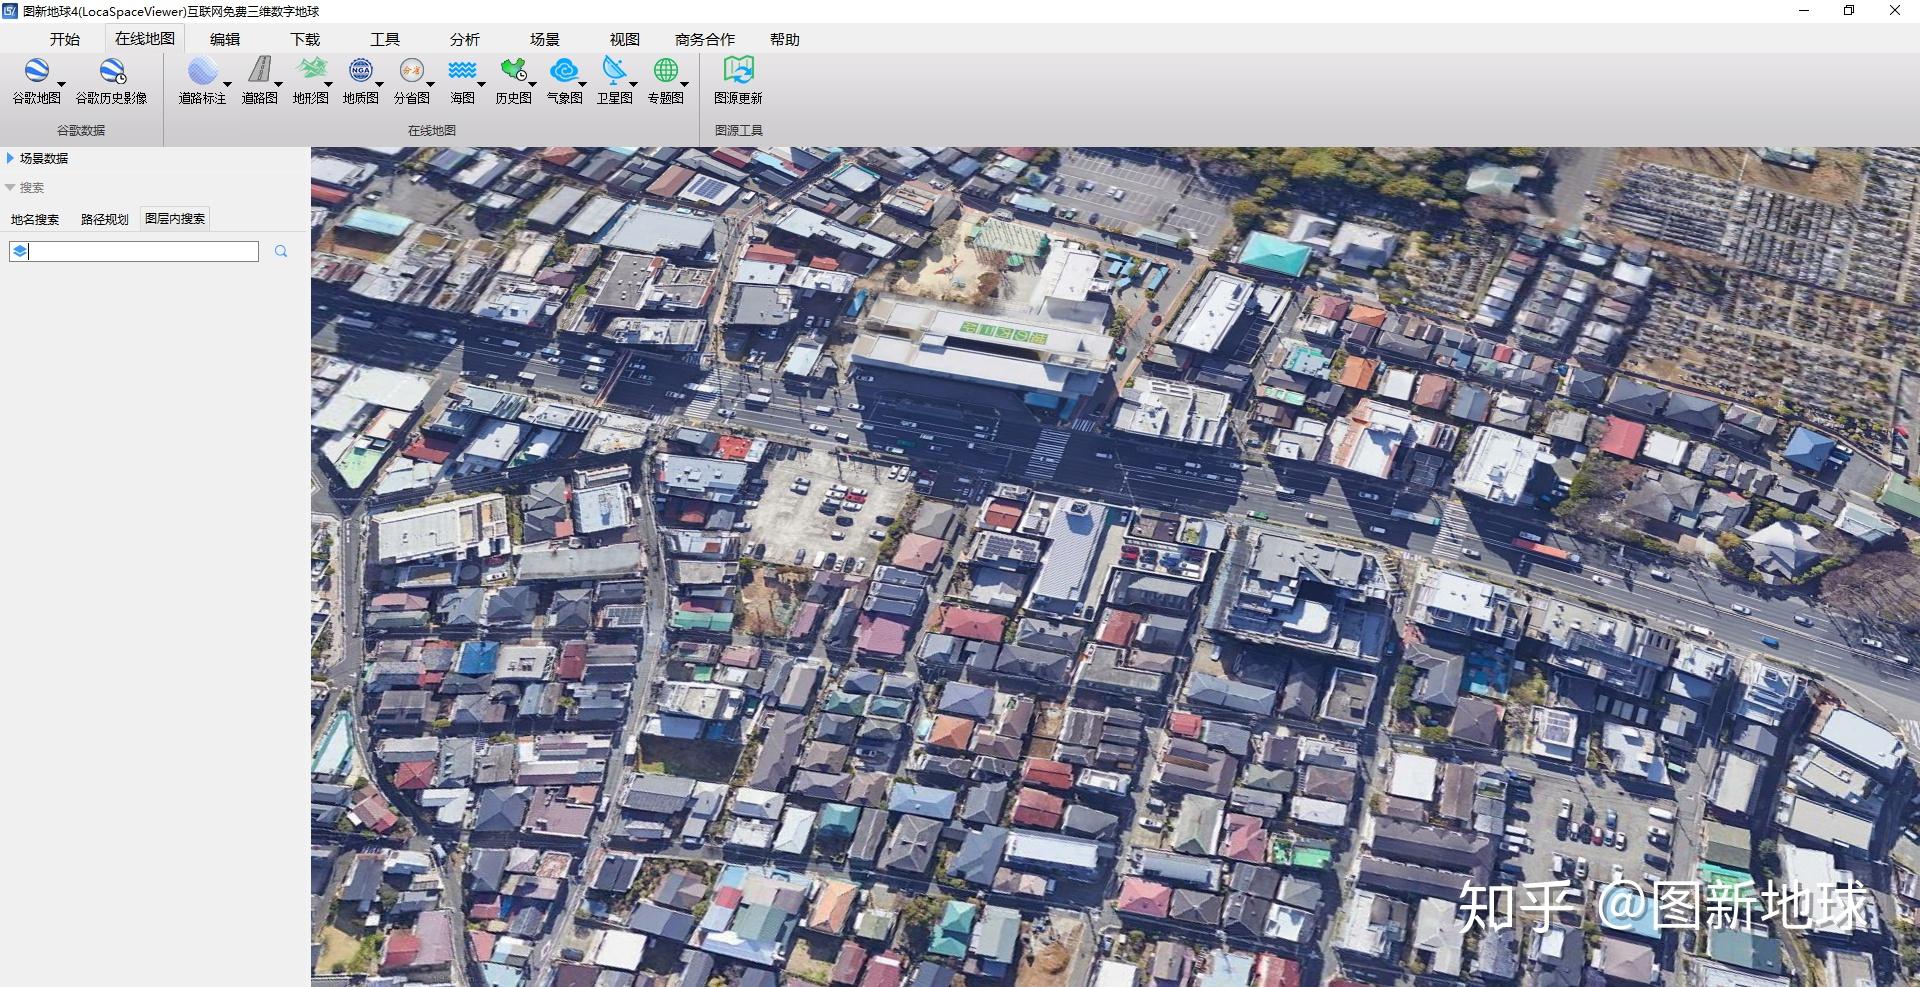 高清卫星实景地图查看城市3d立体效果,太清晰了